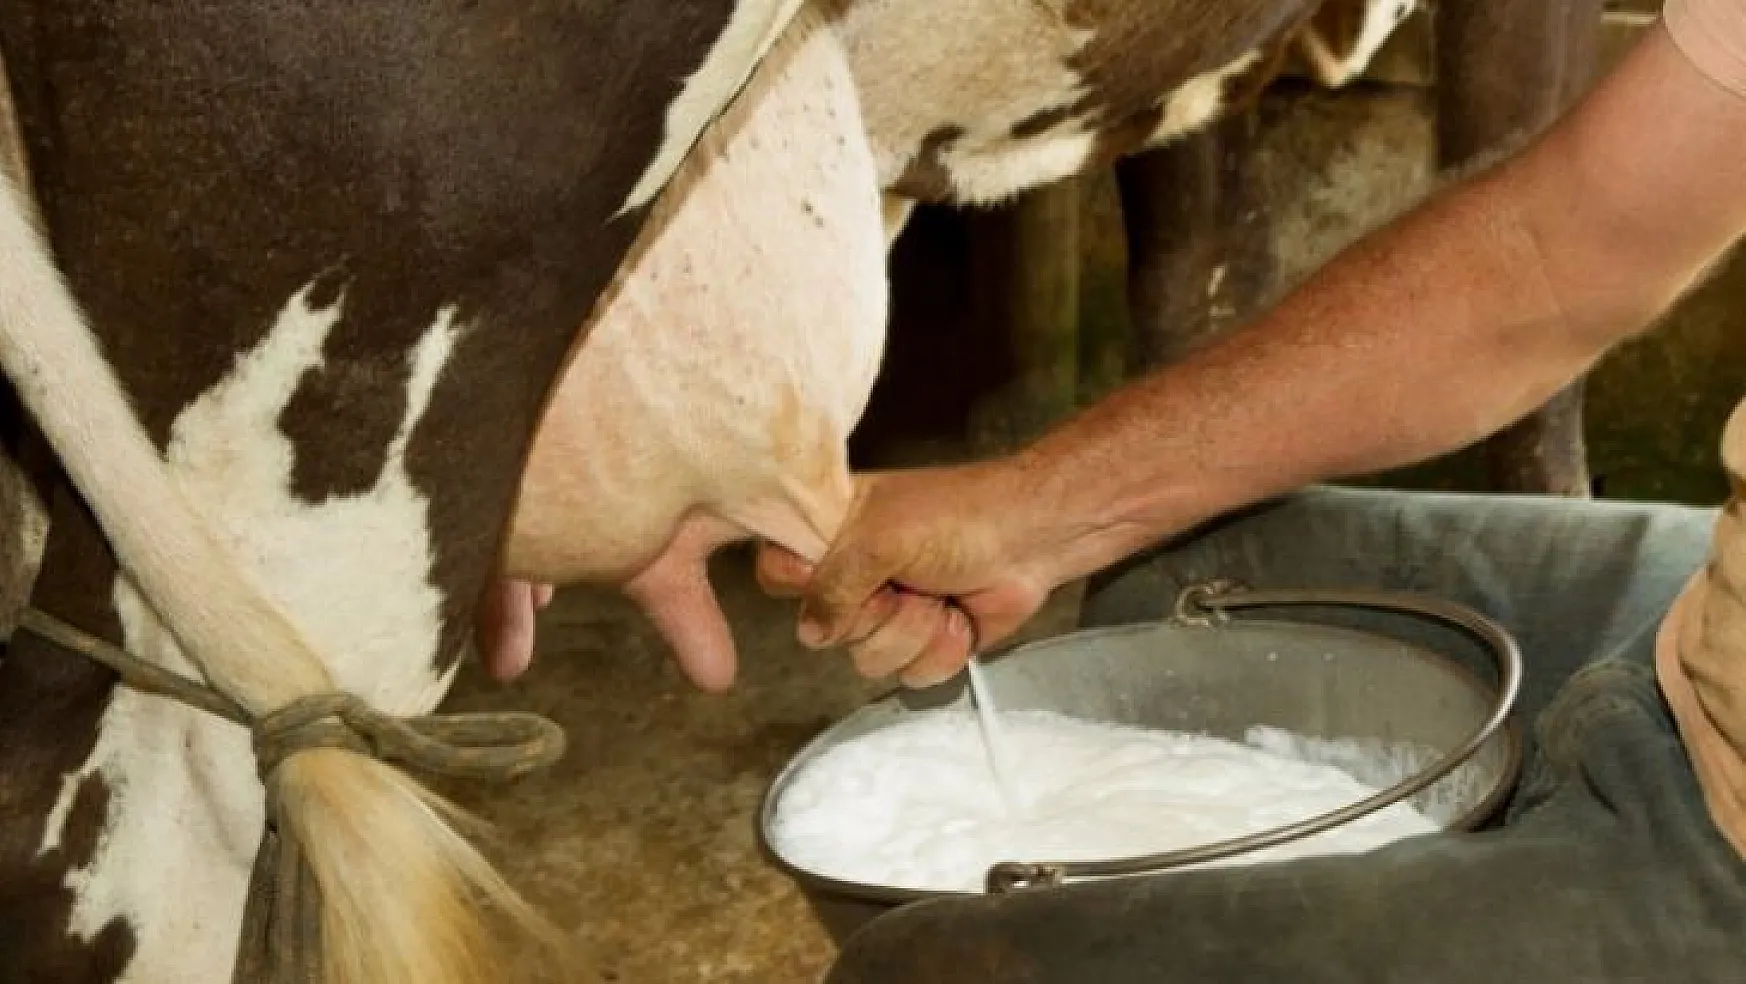 Üretici süte yapılan zamma sevinemedi